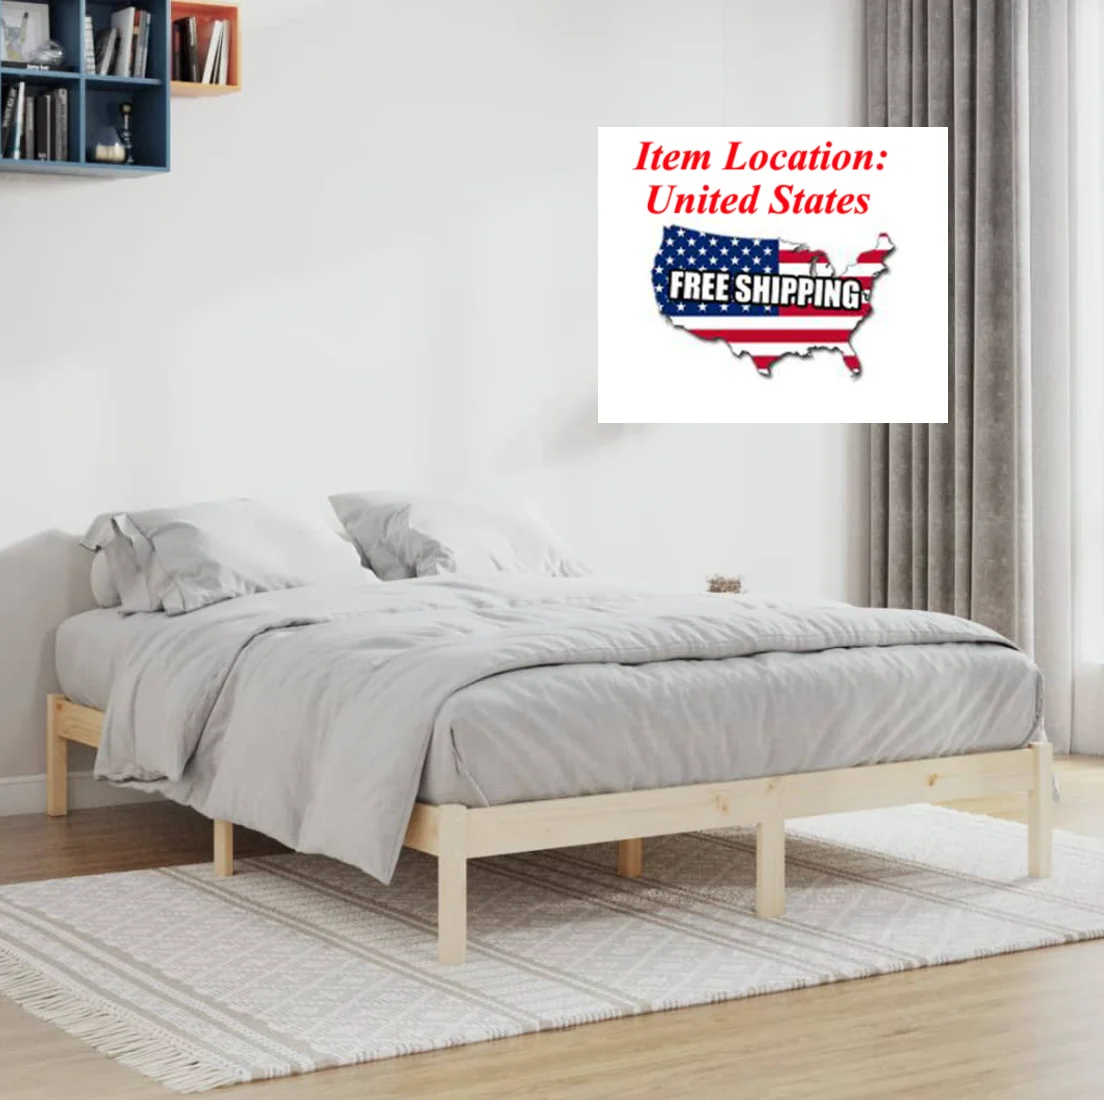 

Рама для кровати 76x79,9 дюйма, из массива дерева, Сосновая двуспальная кровать, Дешевая современная мебель для спальни